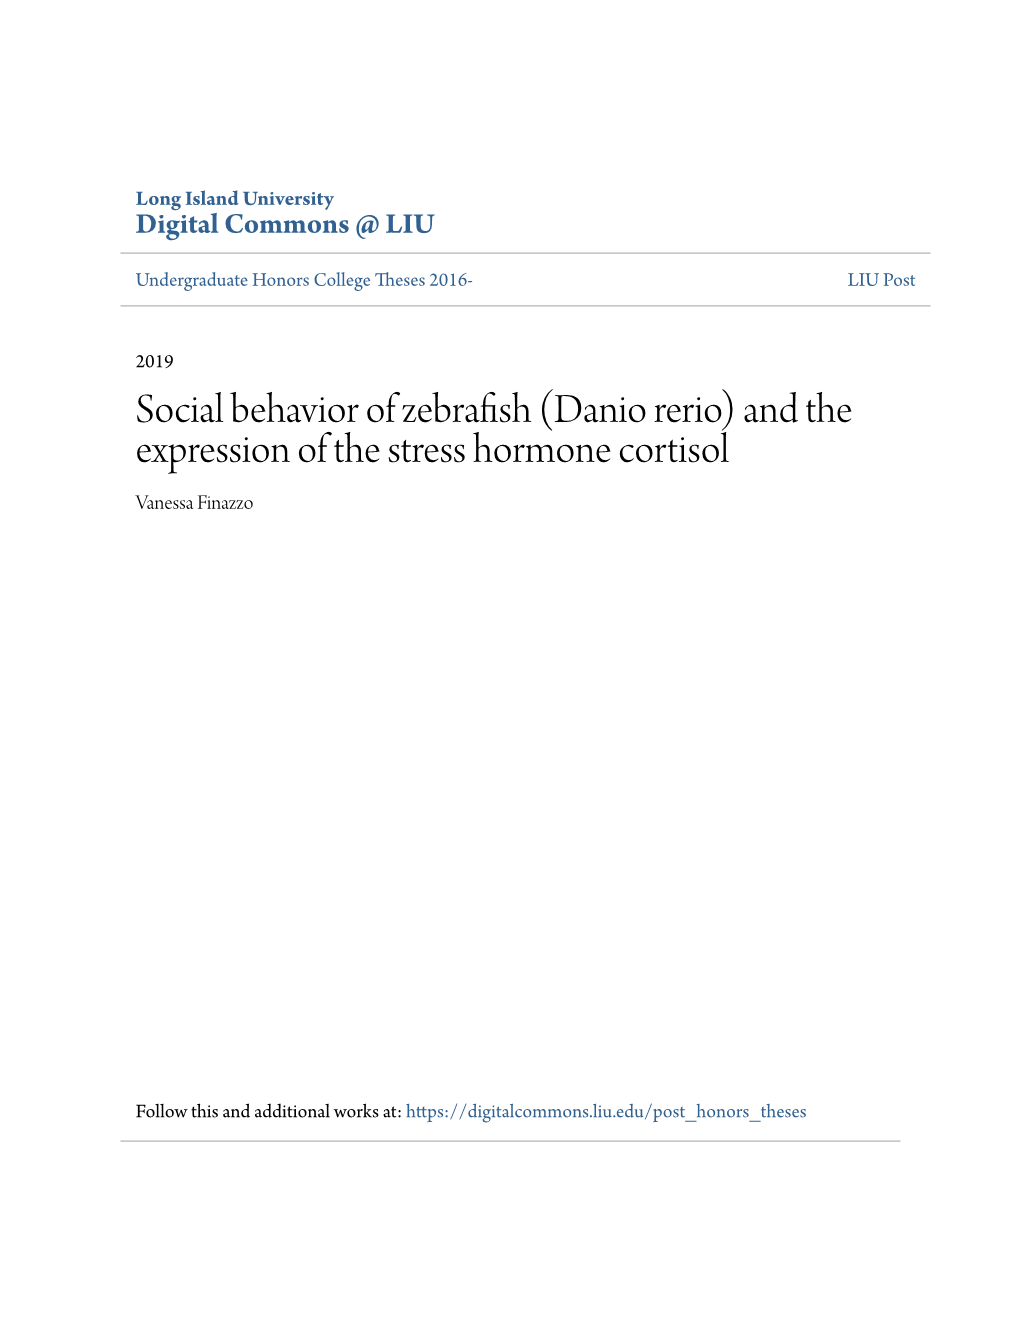 Social Behavior of Zebrafish (Danio Rerio) and the Expression of the Stress Hormone Cortisol Vanessa Finazzo